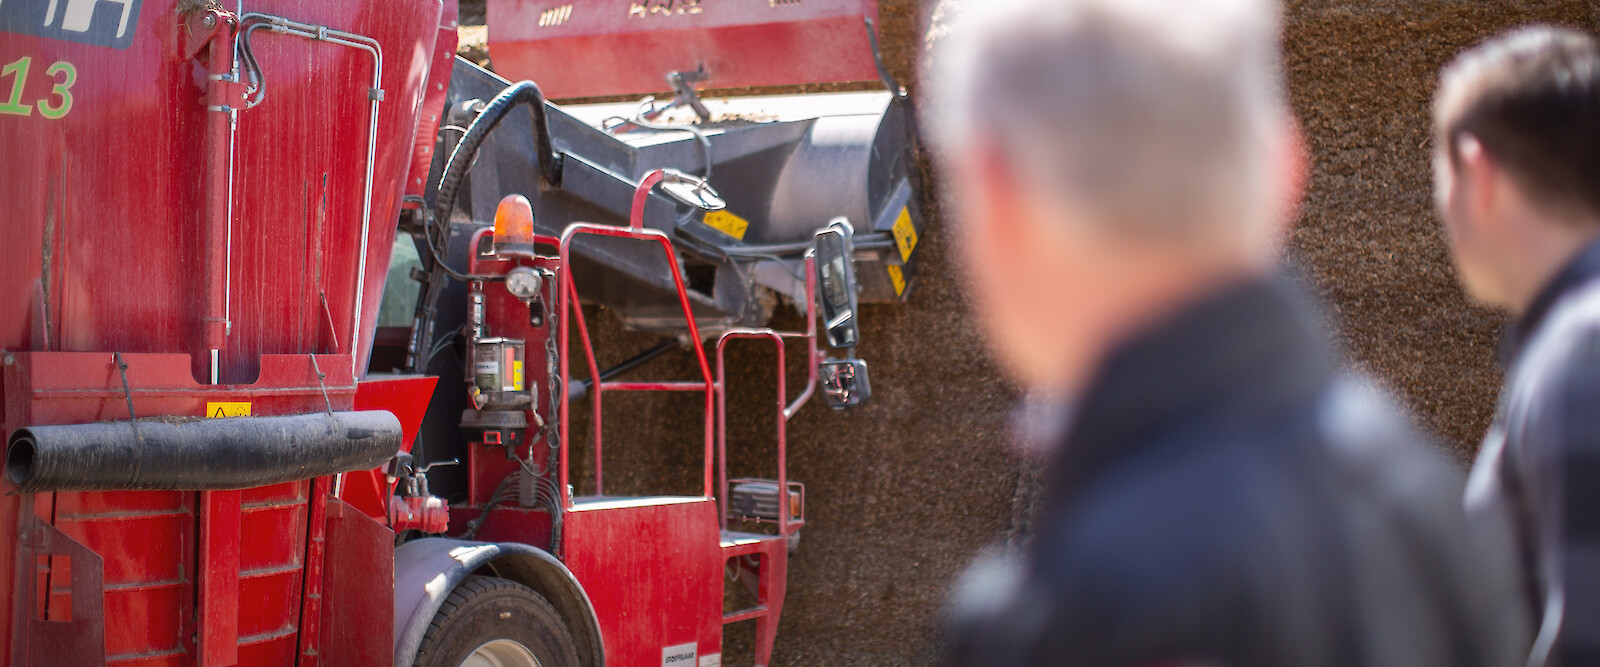 Landwirt und deuka-Berater beobachten Landmaschine bei der Entnahme von Maissilage (© Deutsche Tiernahrung Cremer).